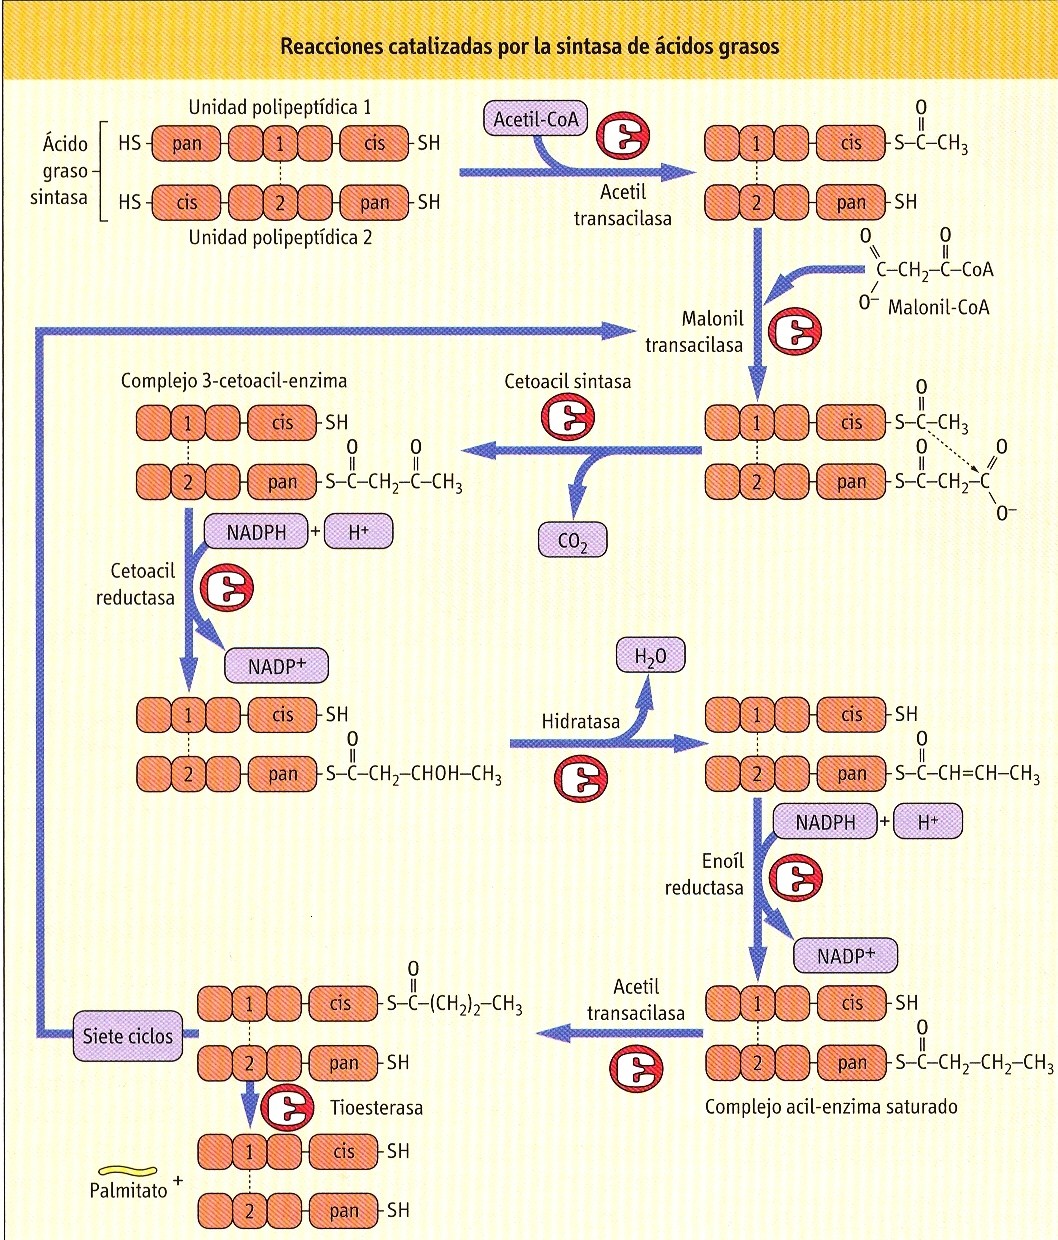 A B BIOSÍNTESIS DE ÁCIDOS GRASOS. A: En el complejo enzimático, la enzima Acetilo transacilasa coloca una molécula de Acetil- CoA en la posición 1-Cis-SH.